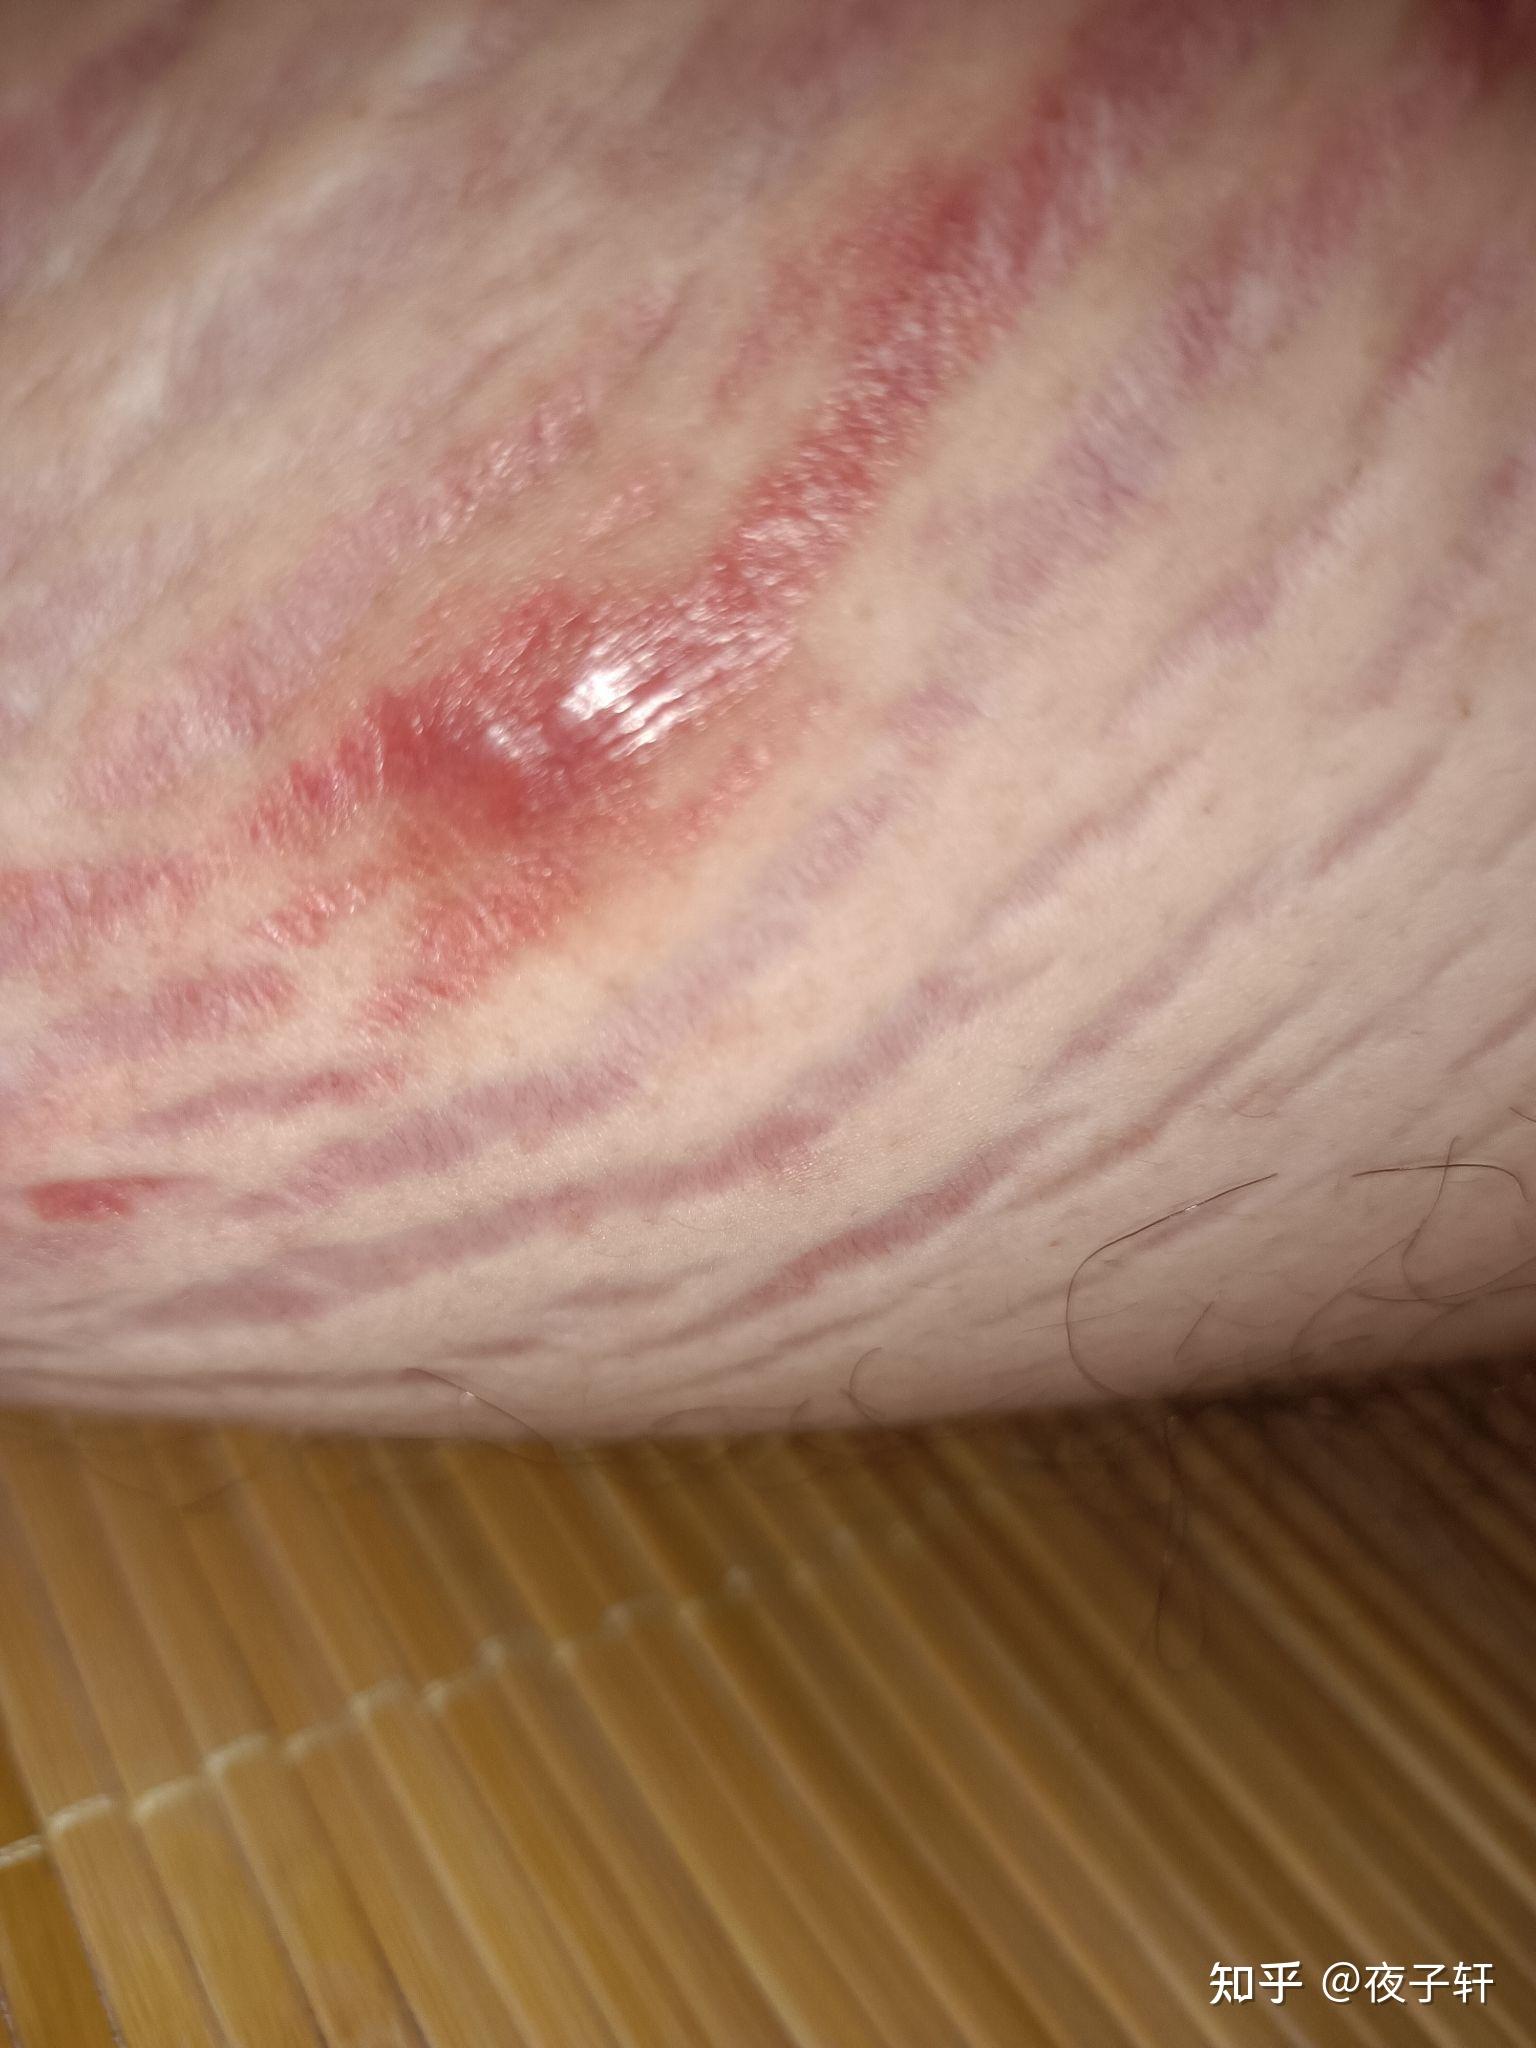 大腿内侧有这样红色的斑但是不痒,这是什么症状?